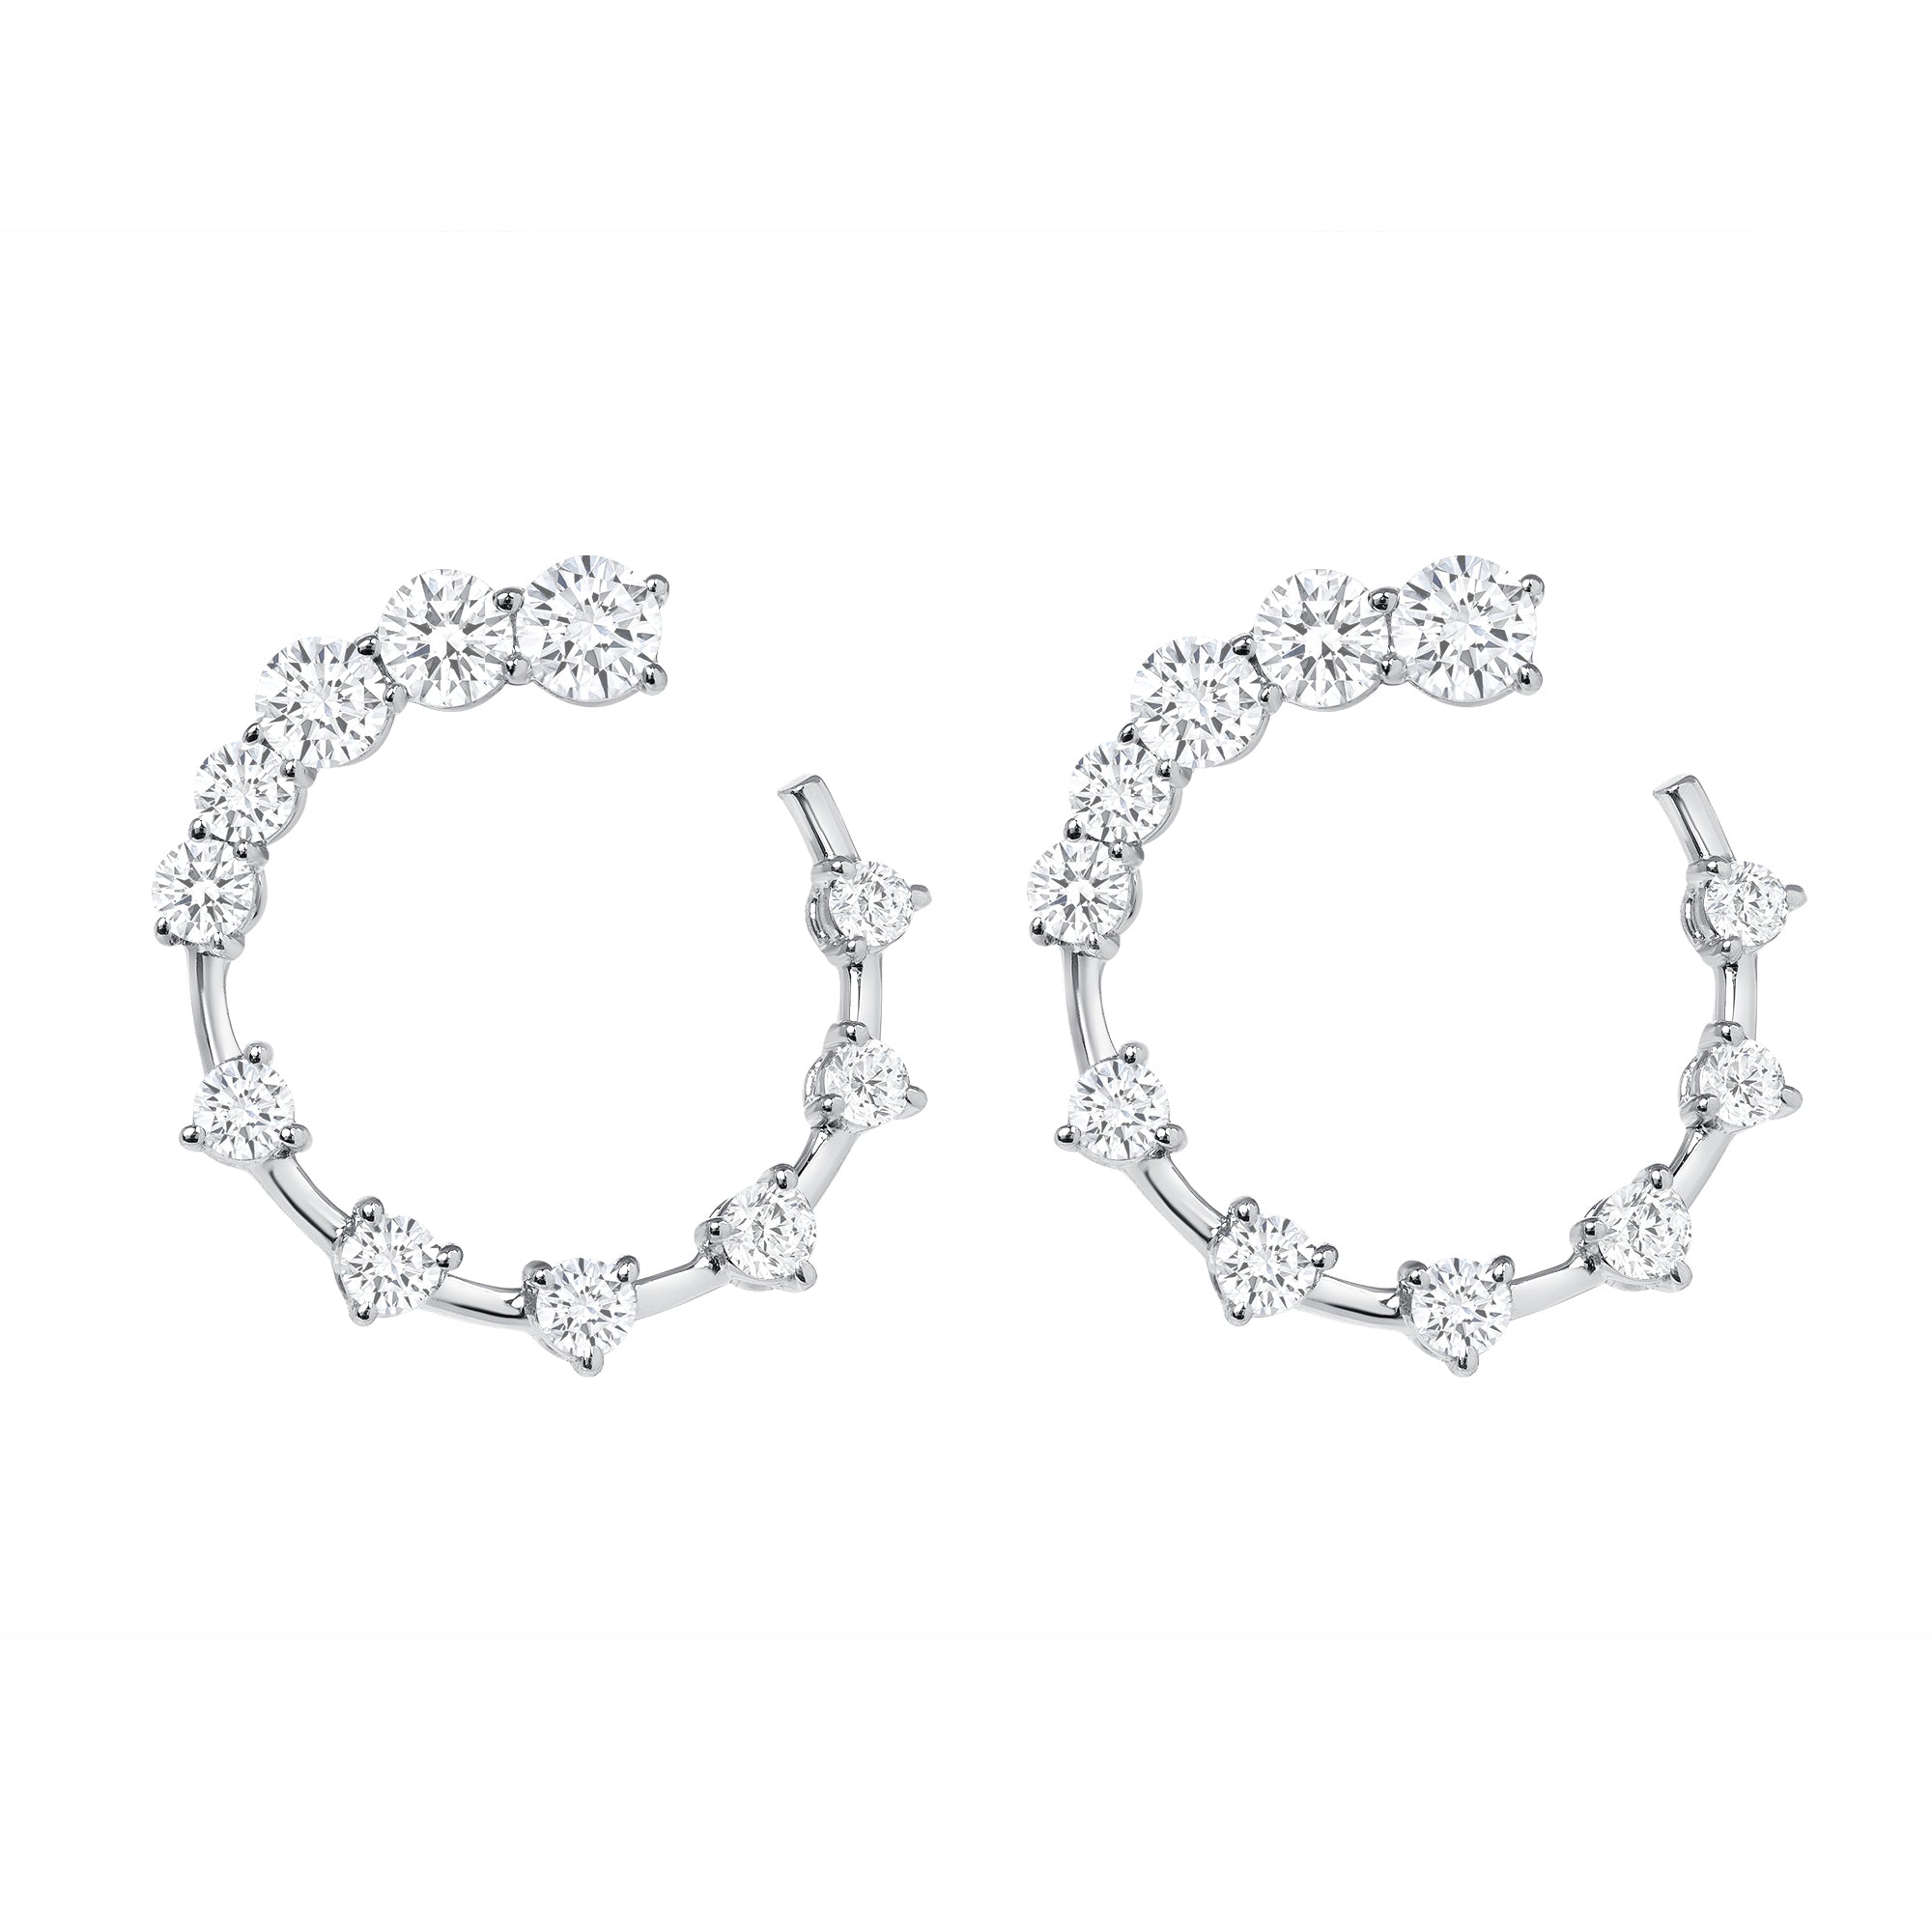 Round Brilliant Cut Diamond Open Hoop Swirl Earrings in 18K White Gold